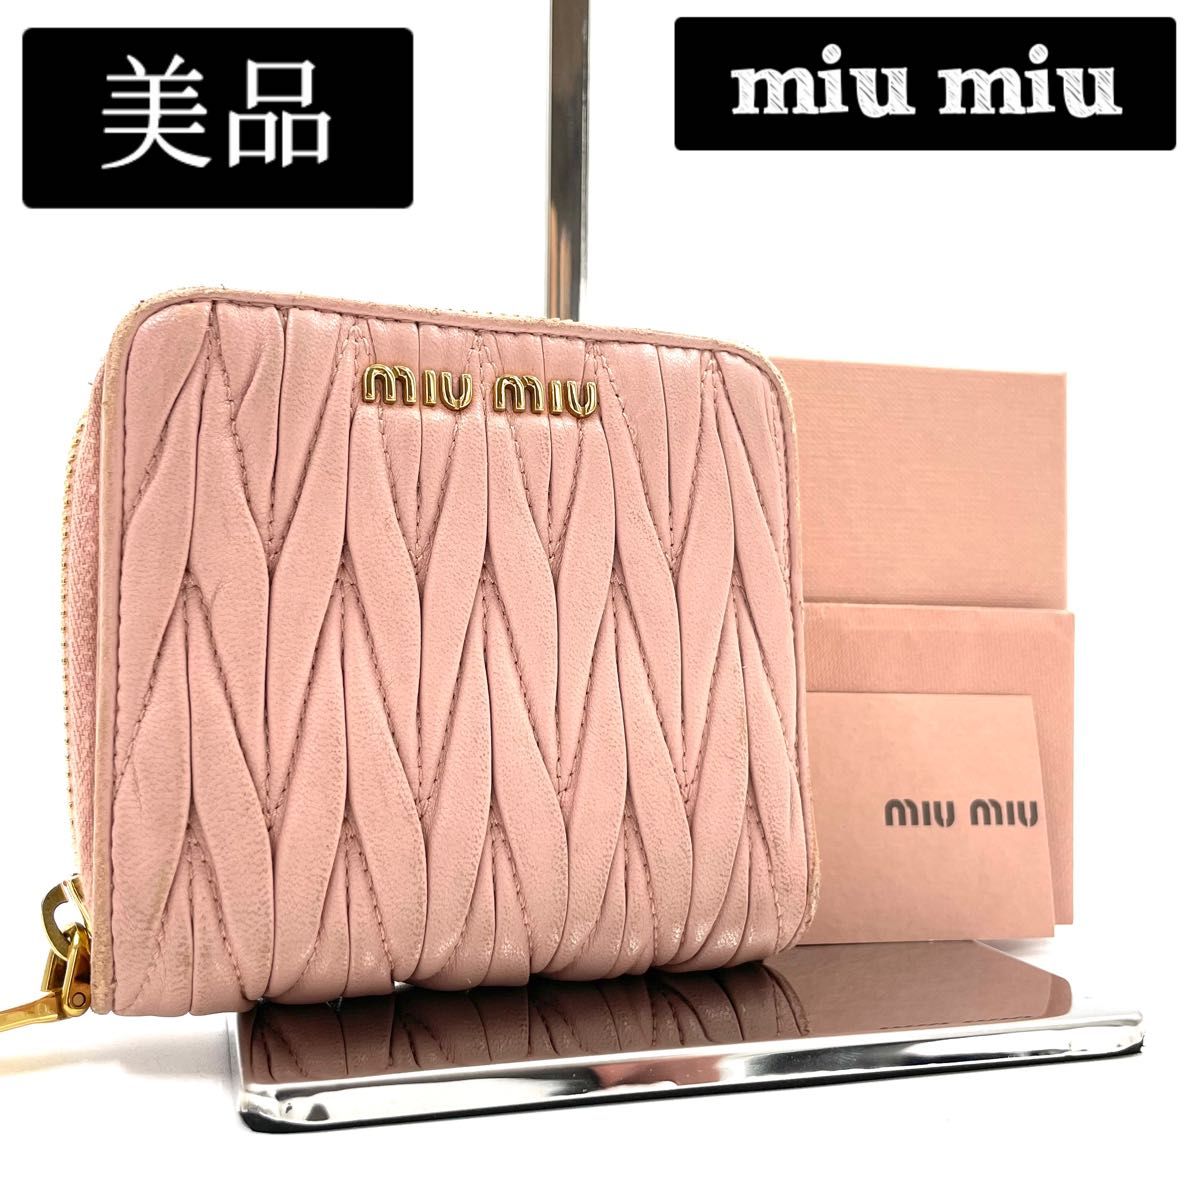 美品 マテラッセ / miu miu ミュウミュウ 折り財布 二つ折り財布 ラウンドファスナー / レザー マトラッセ ピンク